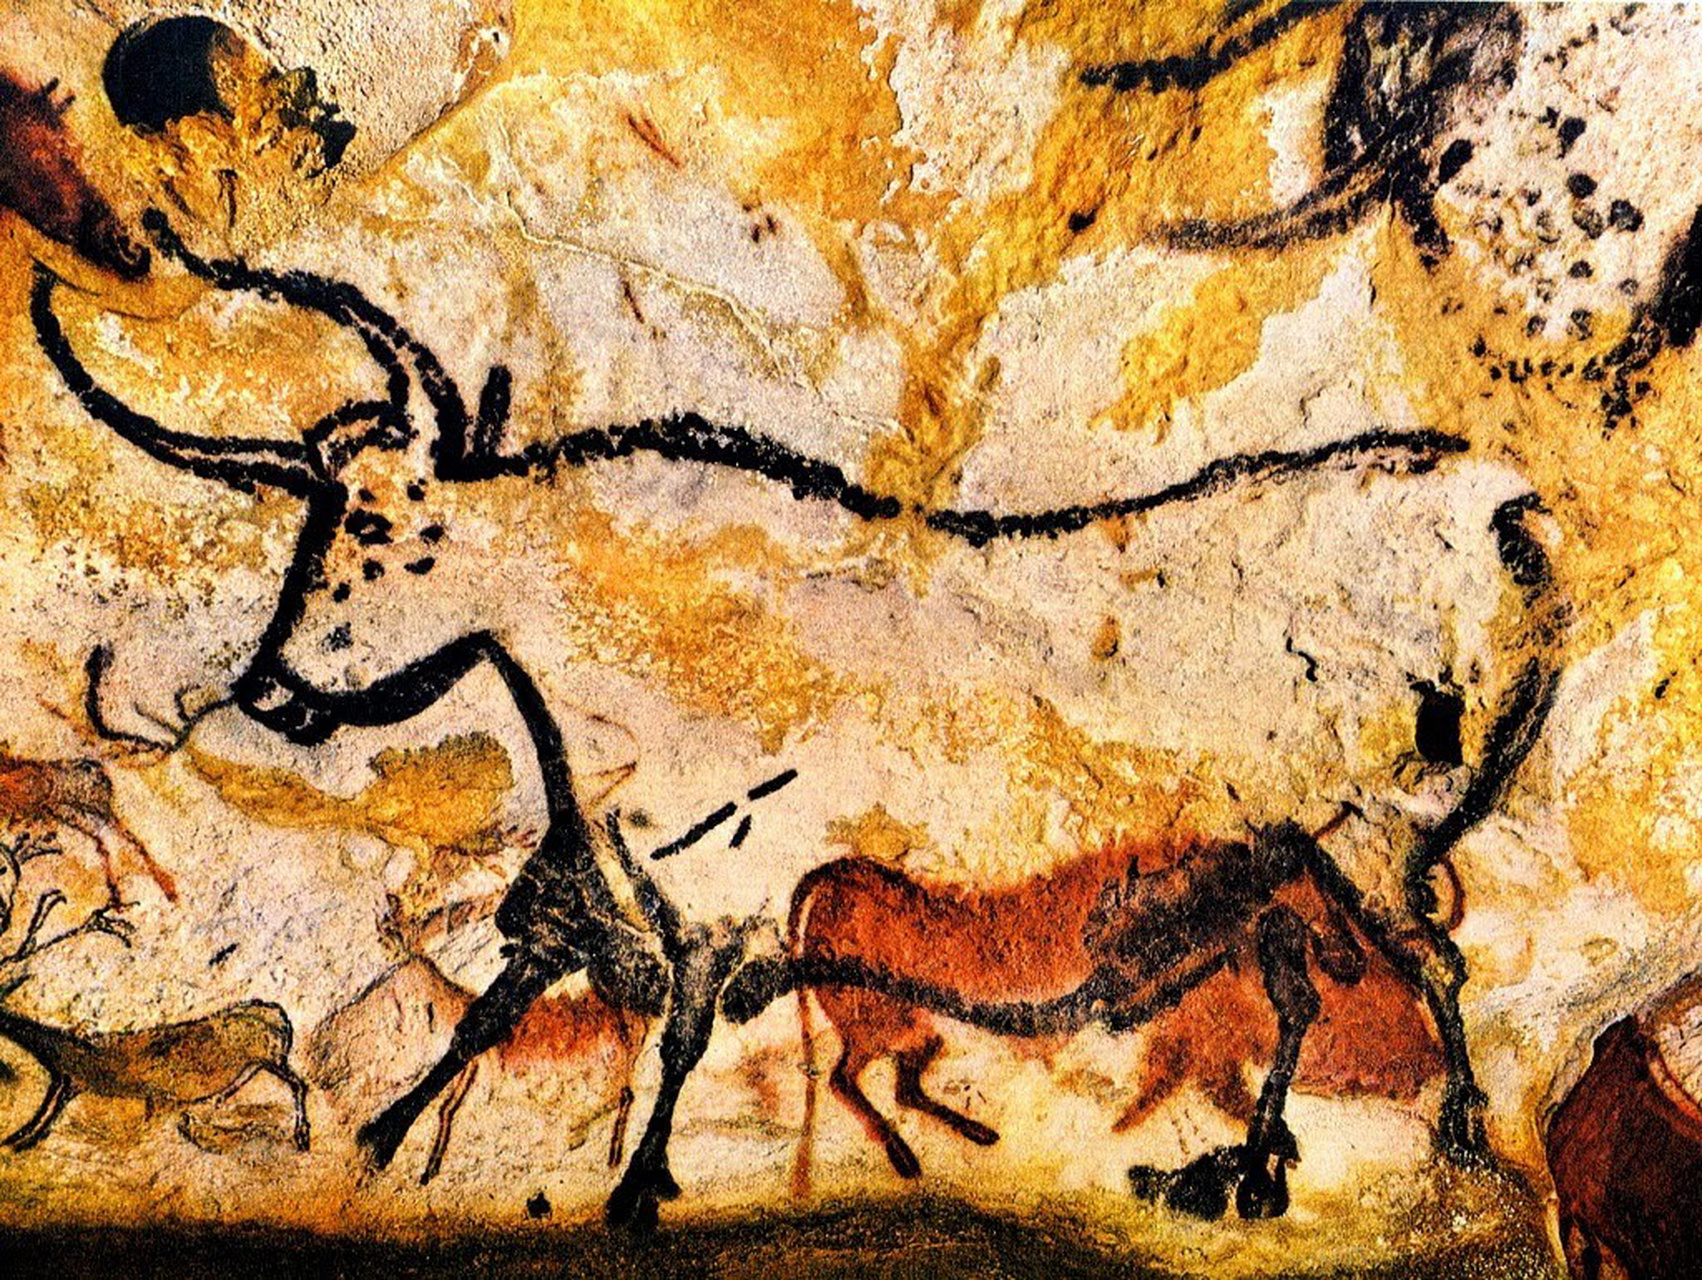 17000千年前的牛 拉斯科洞窟(法语:grotte de lascaux)壁画,位于法国